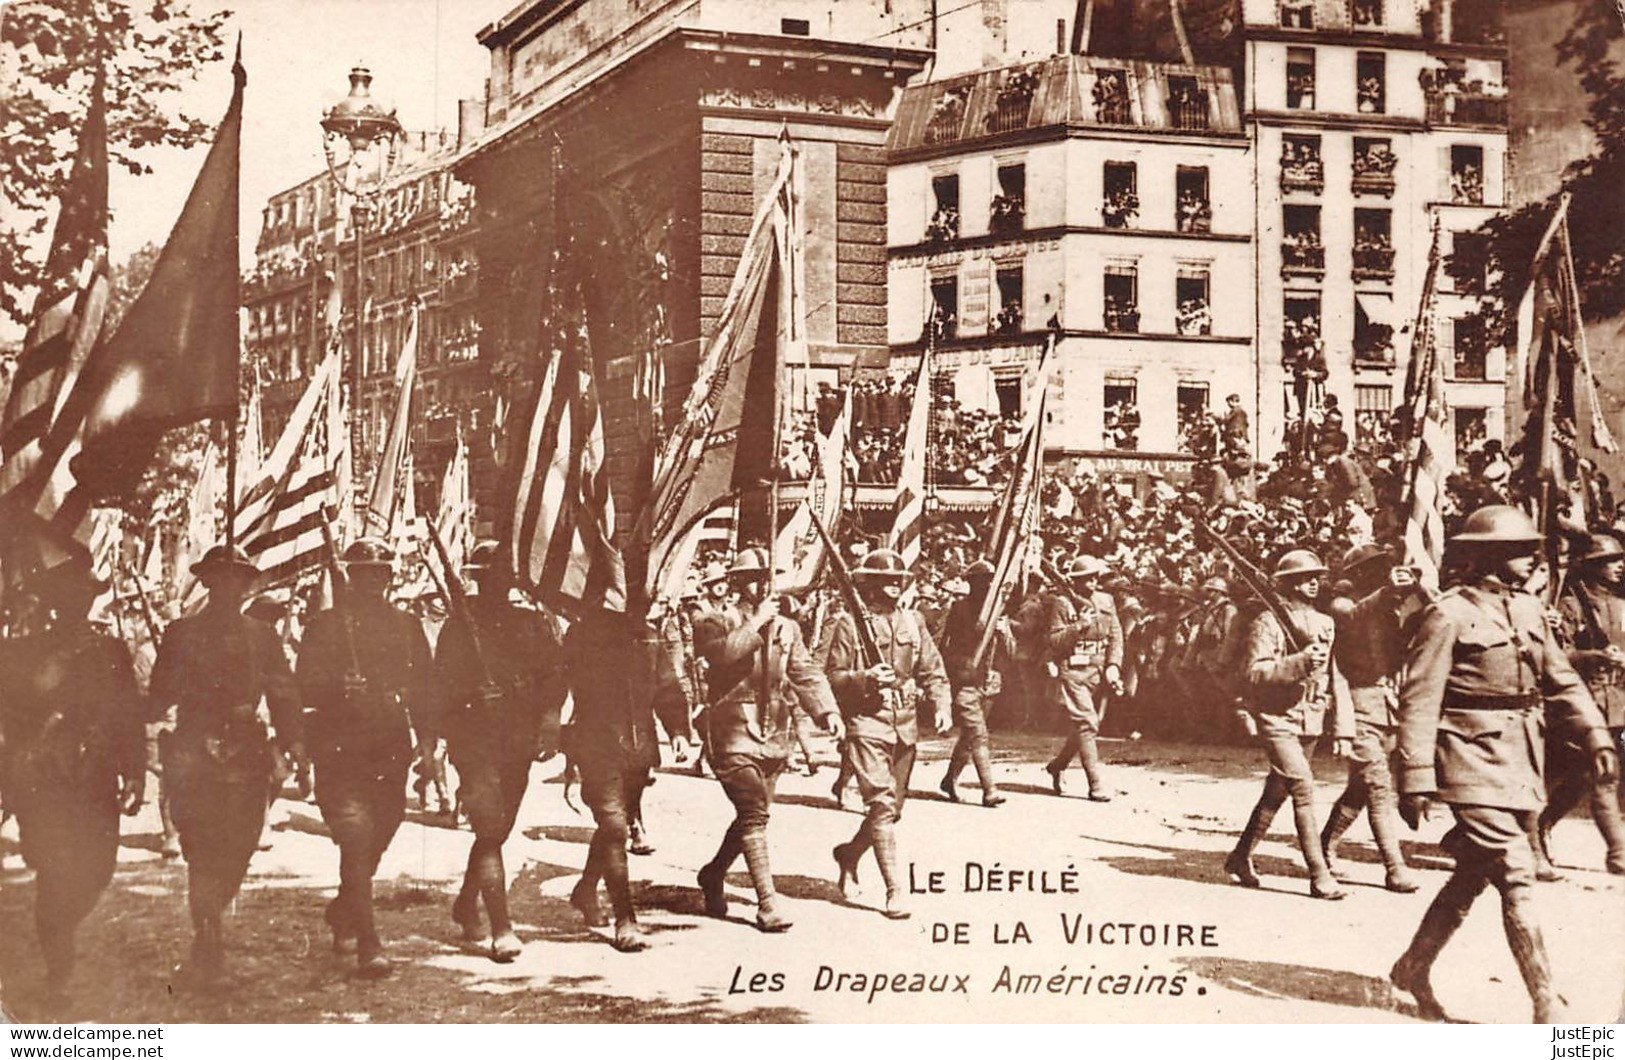 WW1 - CA-PHO - Fête De La Victoire à Paris - Défilé Des "doughboys" Avec Les Drapeaux Américains Le 14 Juillet 1919 - Guerre 1914-18